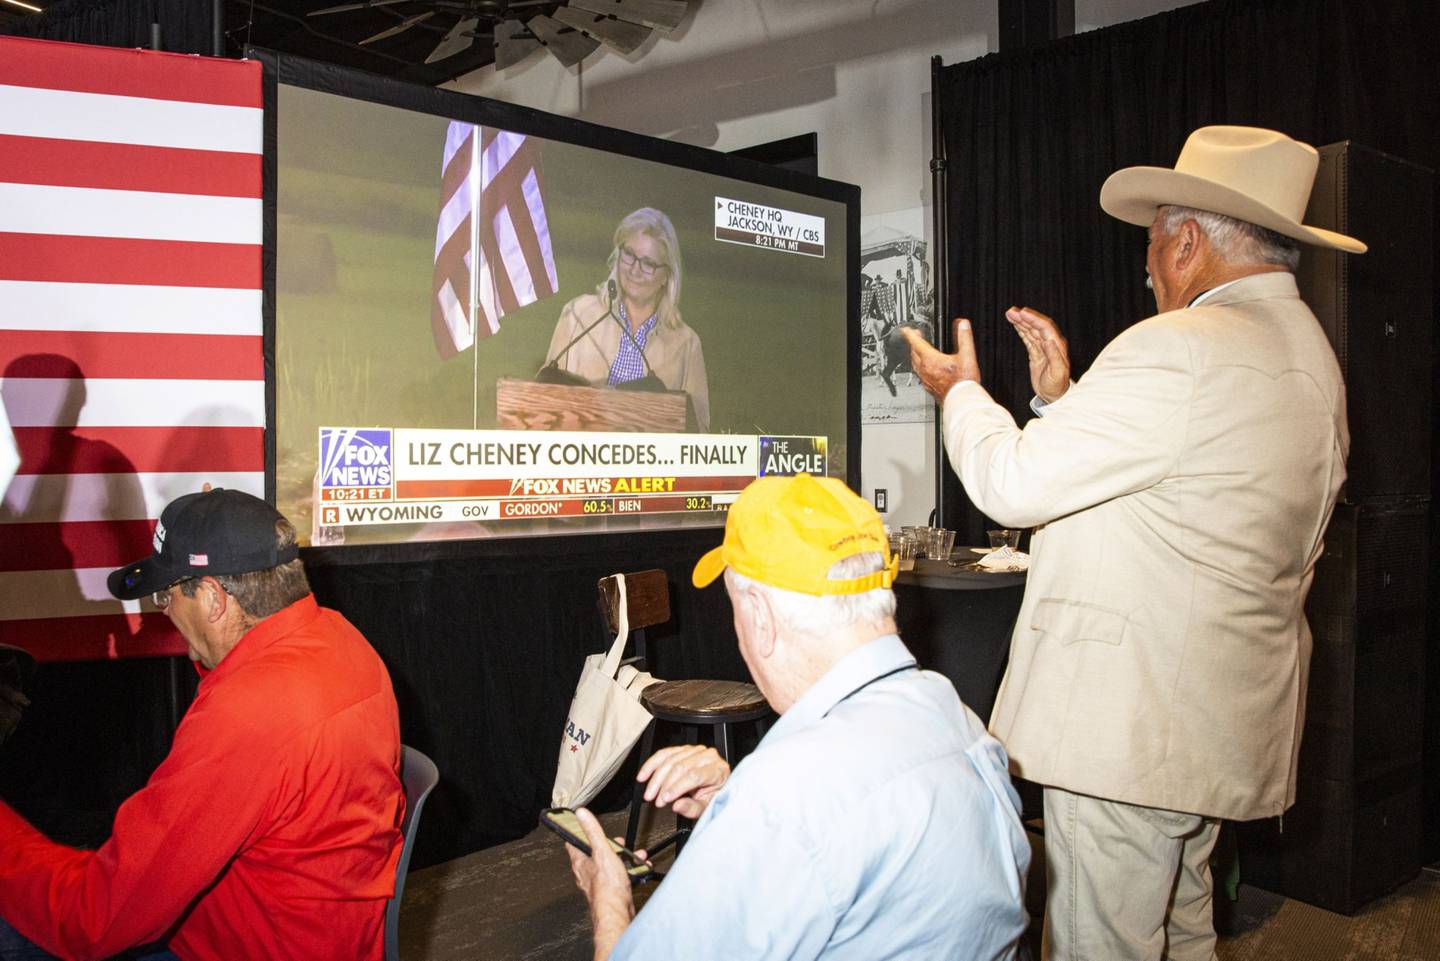 Una pantalla muestra a la ex congresista Liz Cheney luego de perder las elecciones primariasdfd